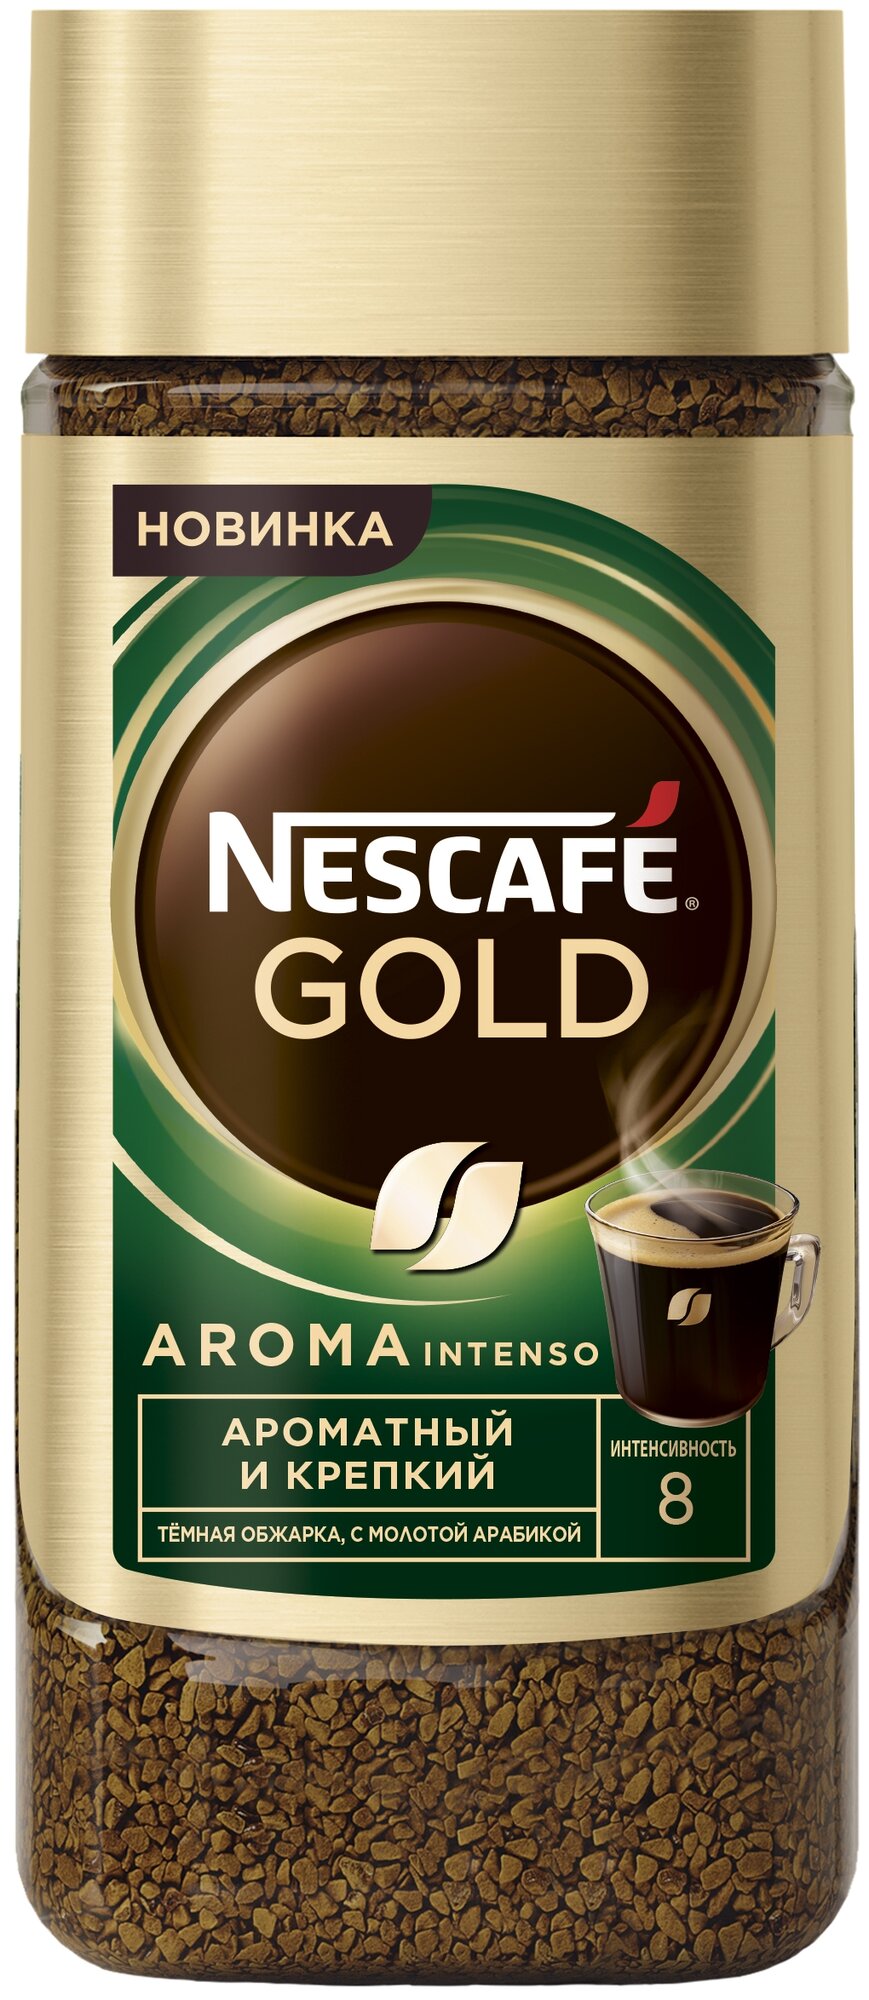 Nescafe Gold Aroma Intenso 170гр х 1шт натуральный растворимый сублимированный кофе - фотография № 1